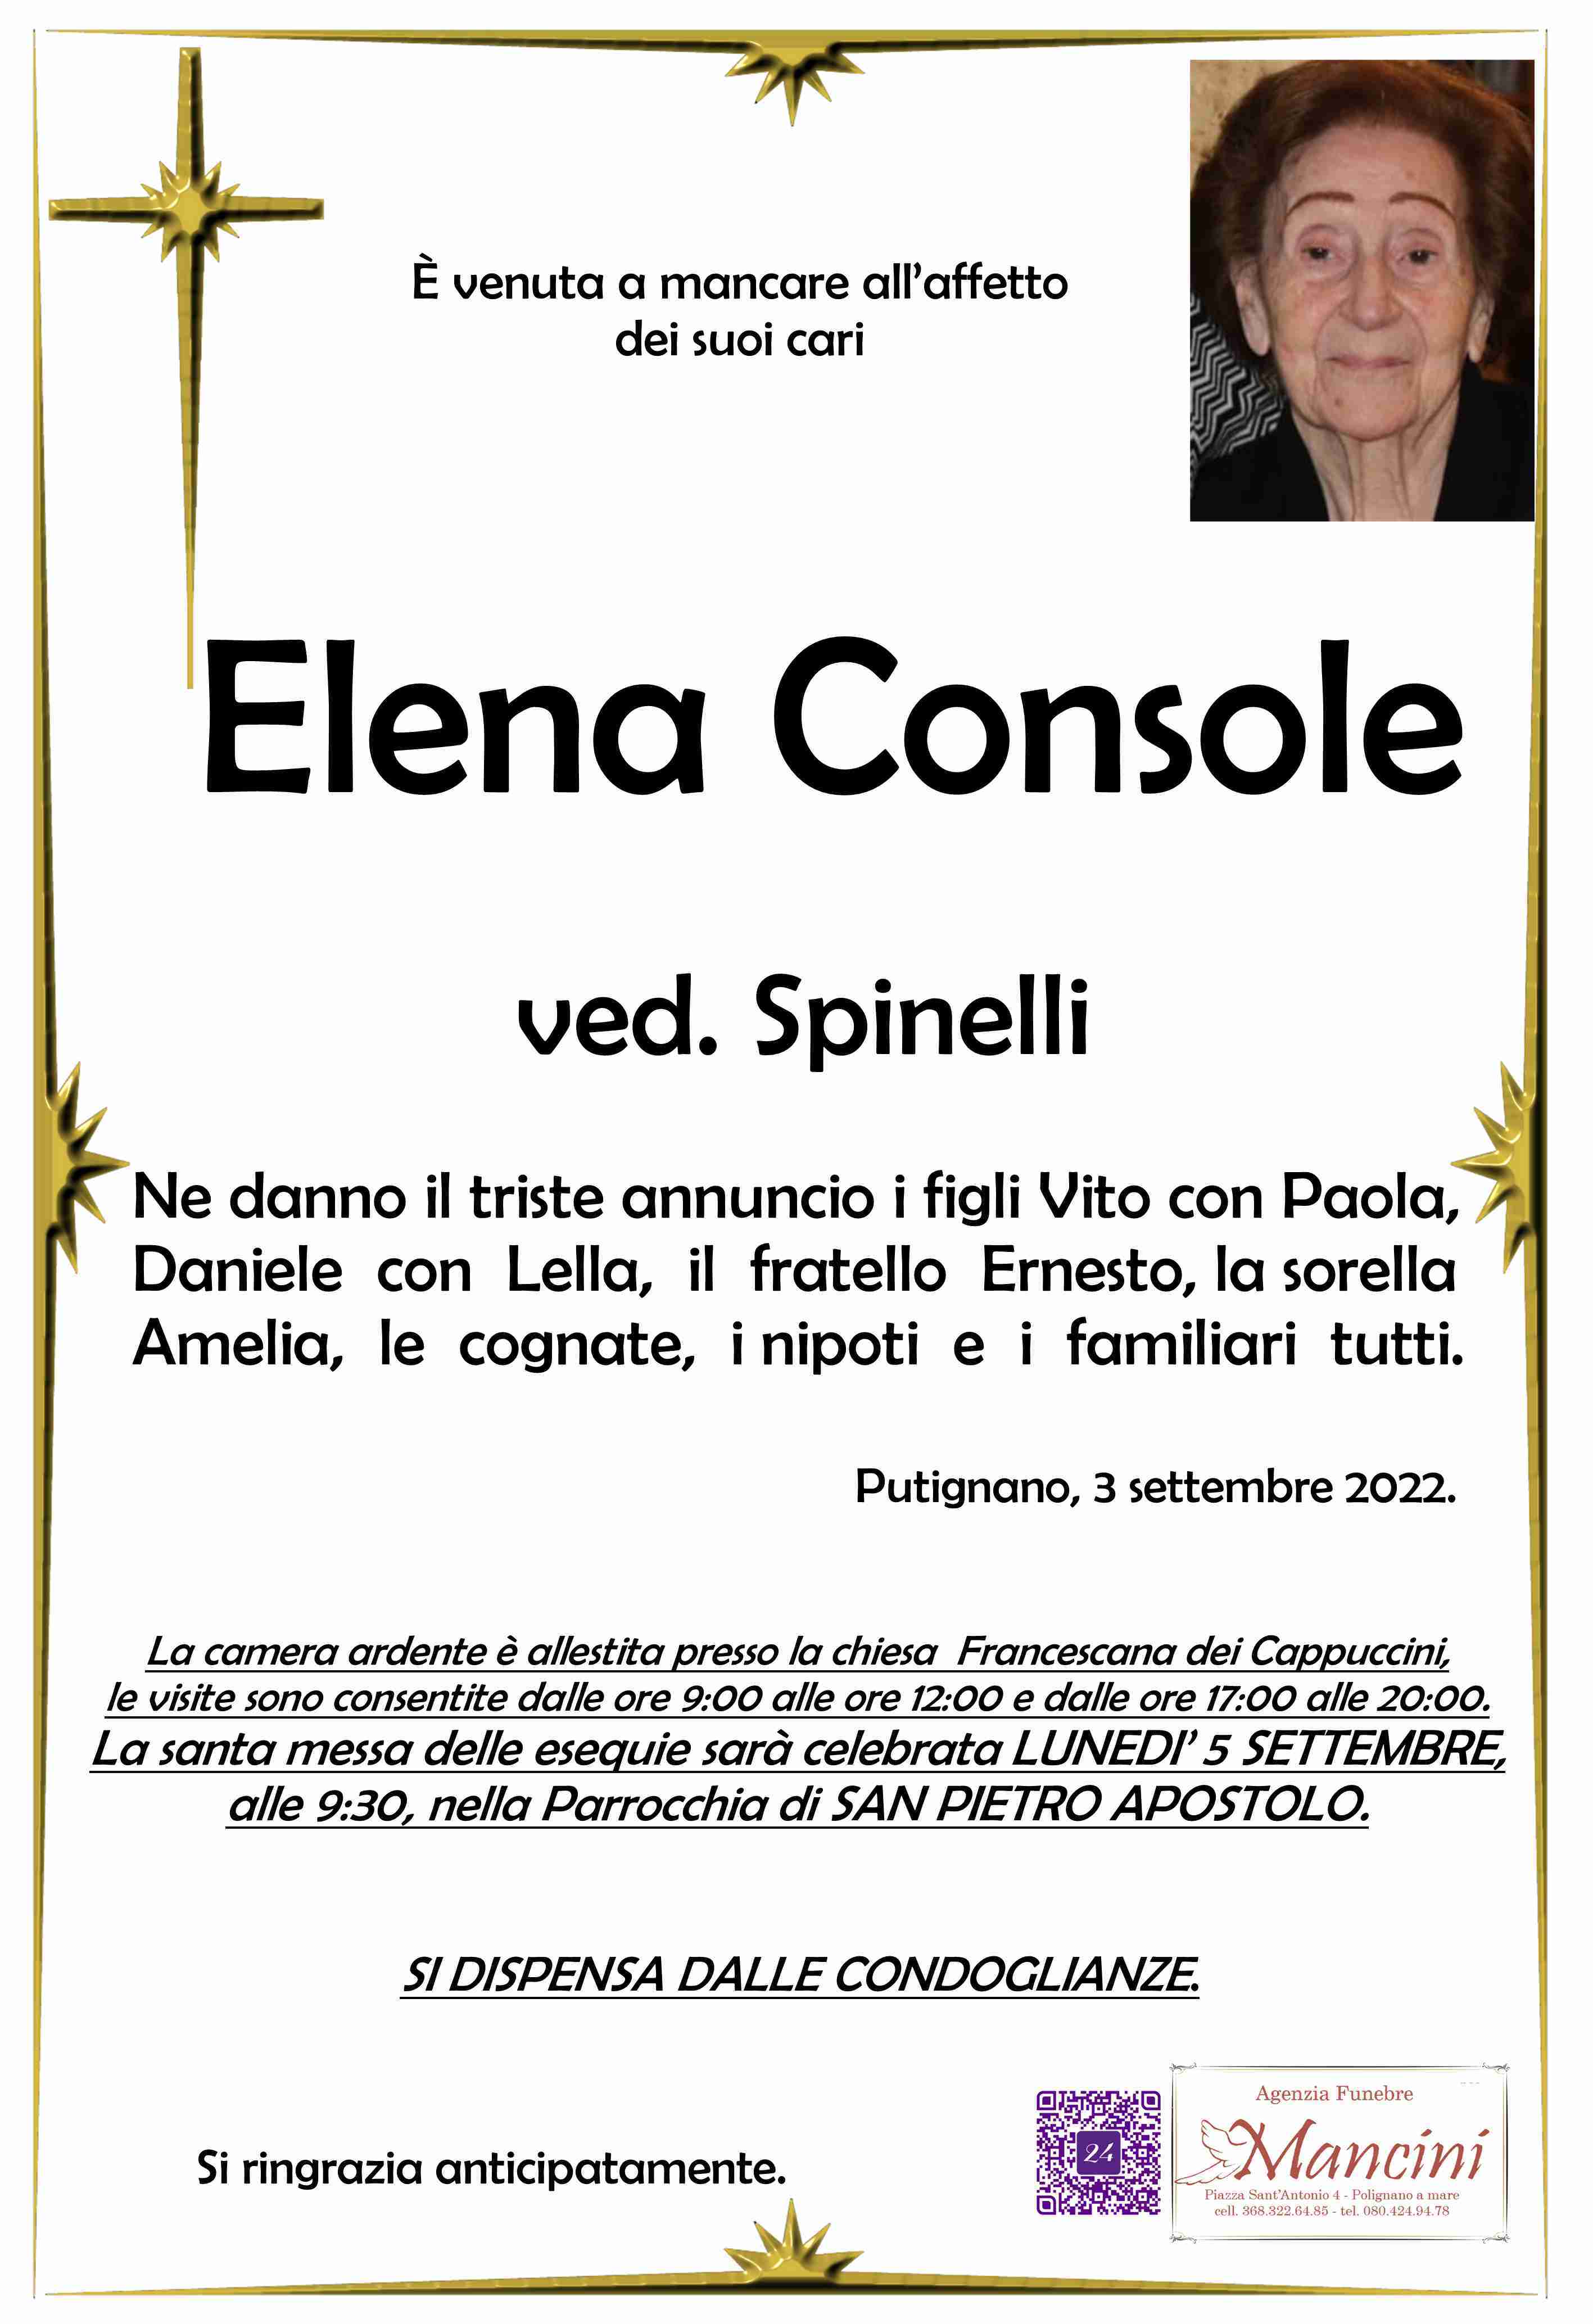 Elena Console